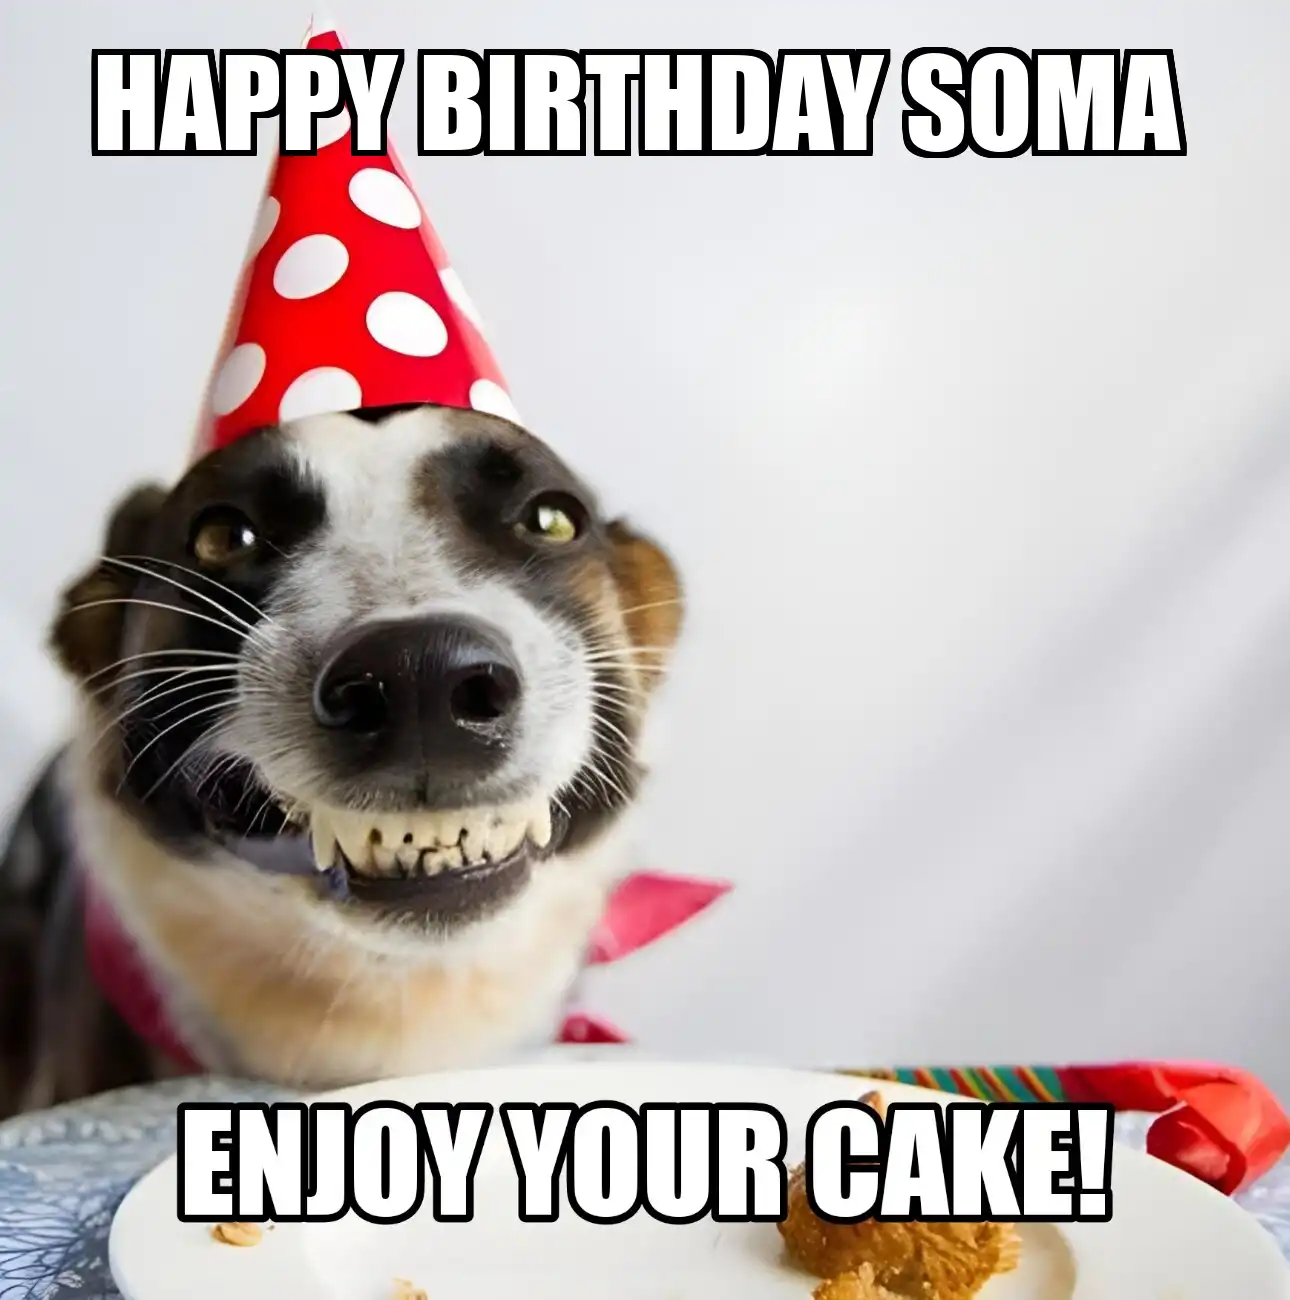 Happy Birthday Soma Enjoy Your Cake Dog Meme